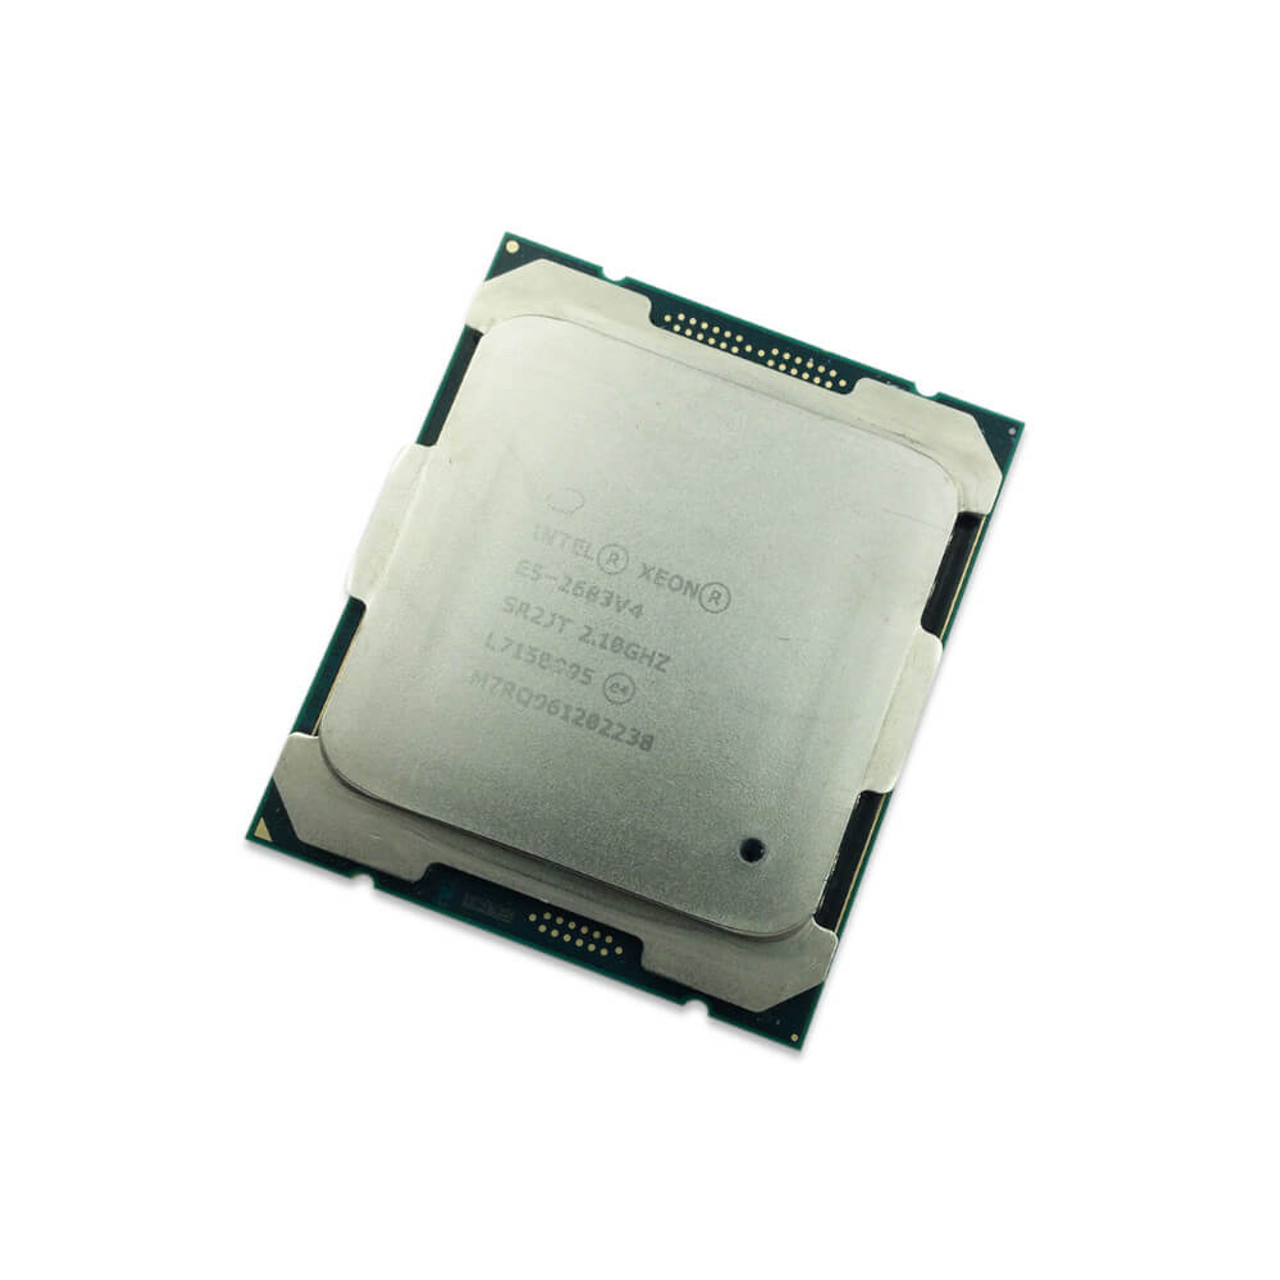 Intel Xeon E5-2683 V4 2.10GHz CPU